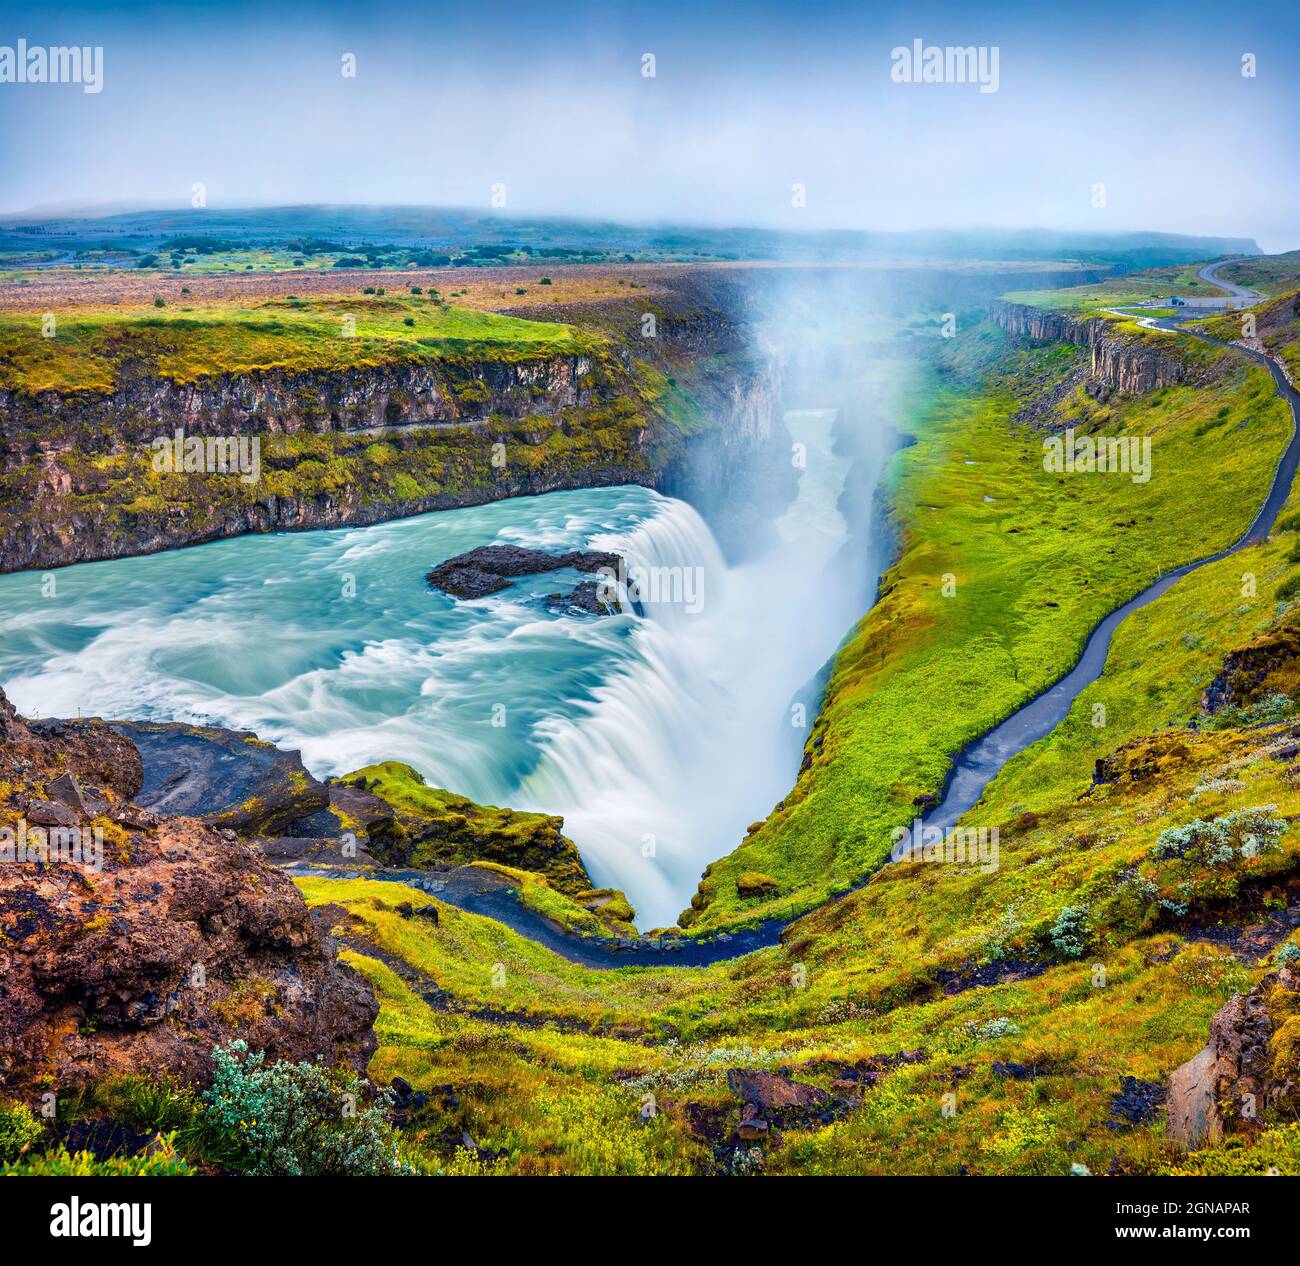 Enorme cascata Gullfoss nella nebbia mattutina. Colorata scena estiva sul fiume Hvita, nel sud-ovest dell'Islanda, in Europa. Foto elaborata in stile artistico. Foto Stock